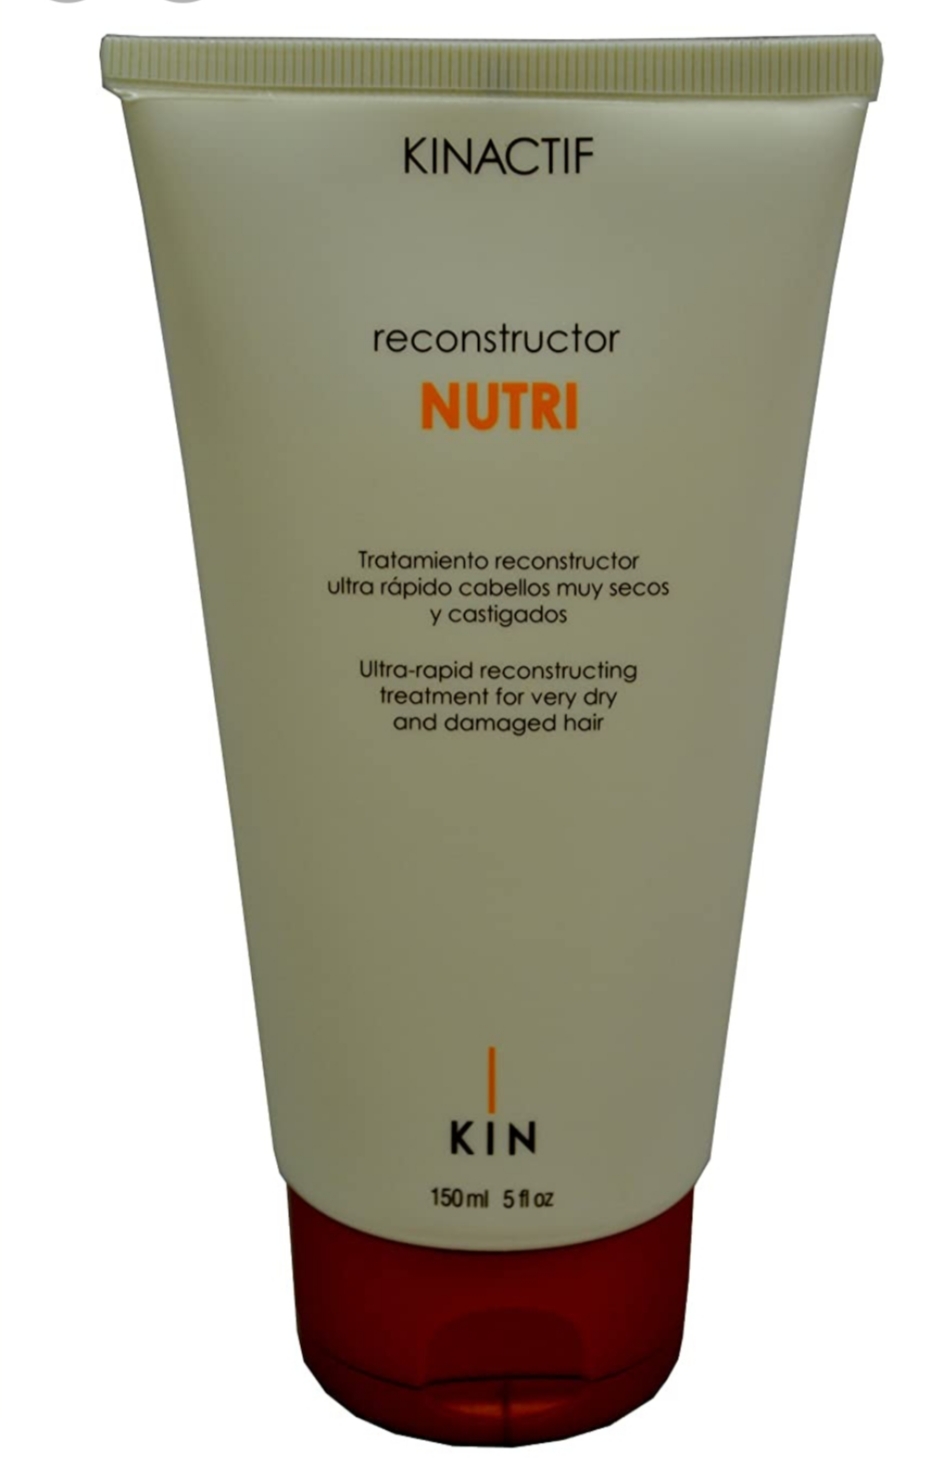 فراورده های حالت دهنده ،نرم کننده وتثبیت کننده آرایش مو (کرمها ، لوسیونها وروغنها) KIN KINACTIF RECONSTRUCTOR NUTRI 150ML